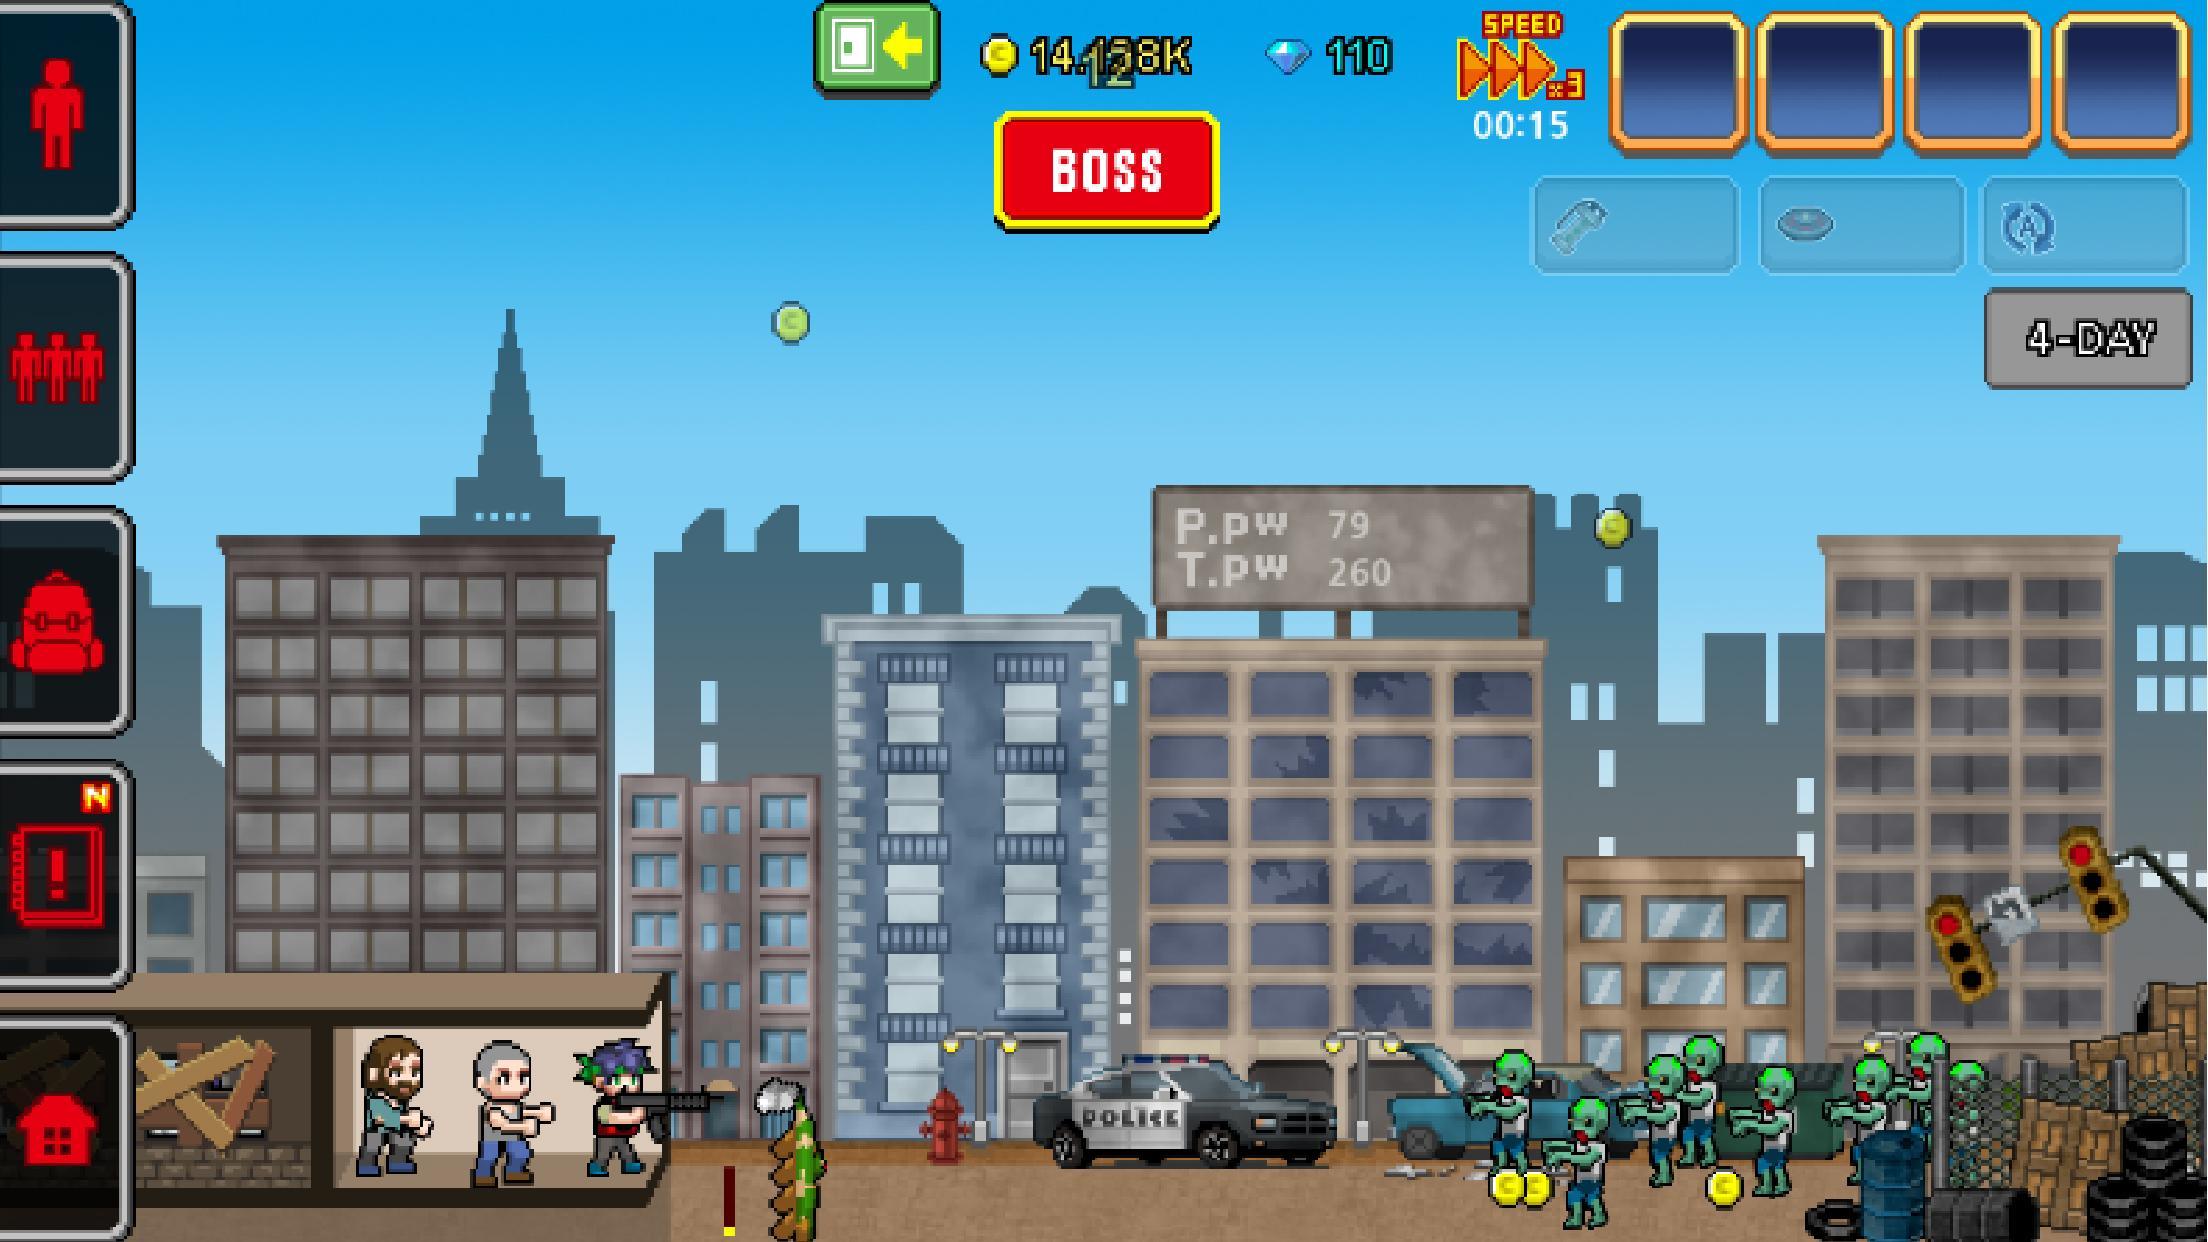 Screenshot 1 of 100 JOURS - Invasion de zombies 1.0.1